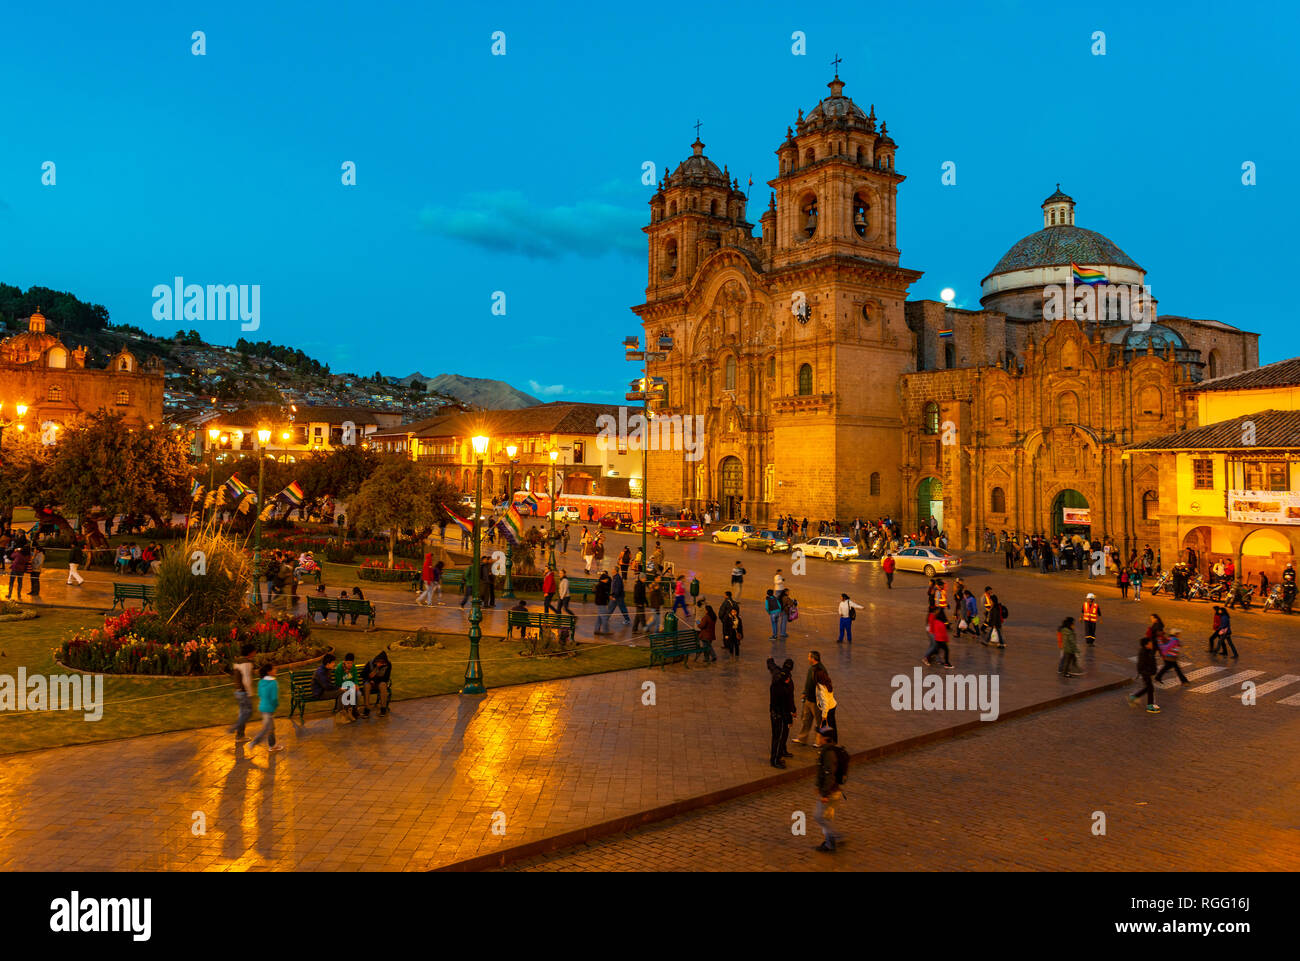 Grande affluence à la Plaza de Armas, la place principale de la ville avec sa cathédrale après le coucher du soleil au cours de l'heure bleue et de flou de mouvement de personnes, au Pérou. Banque D'Images